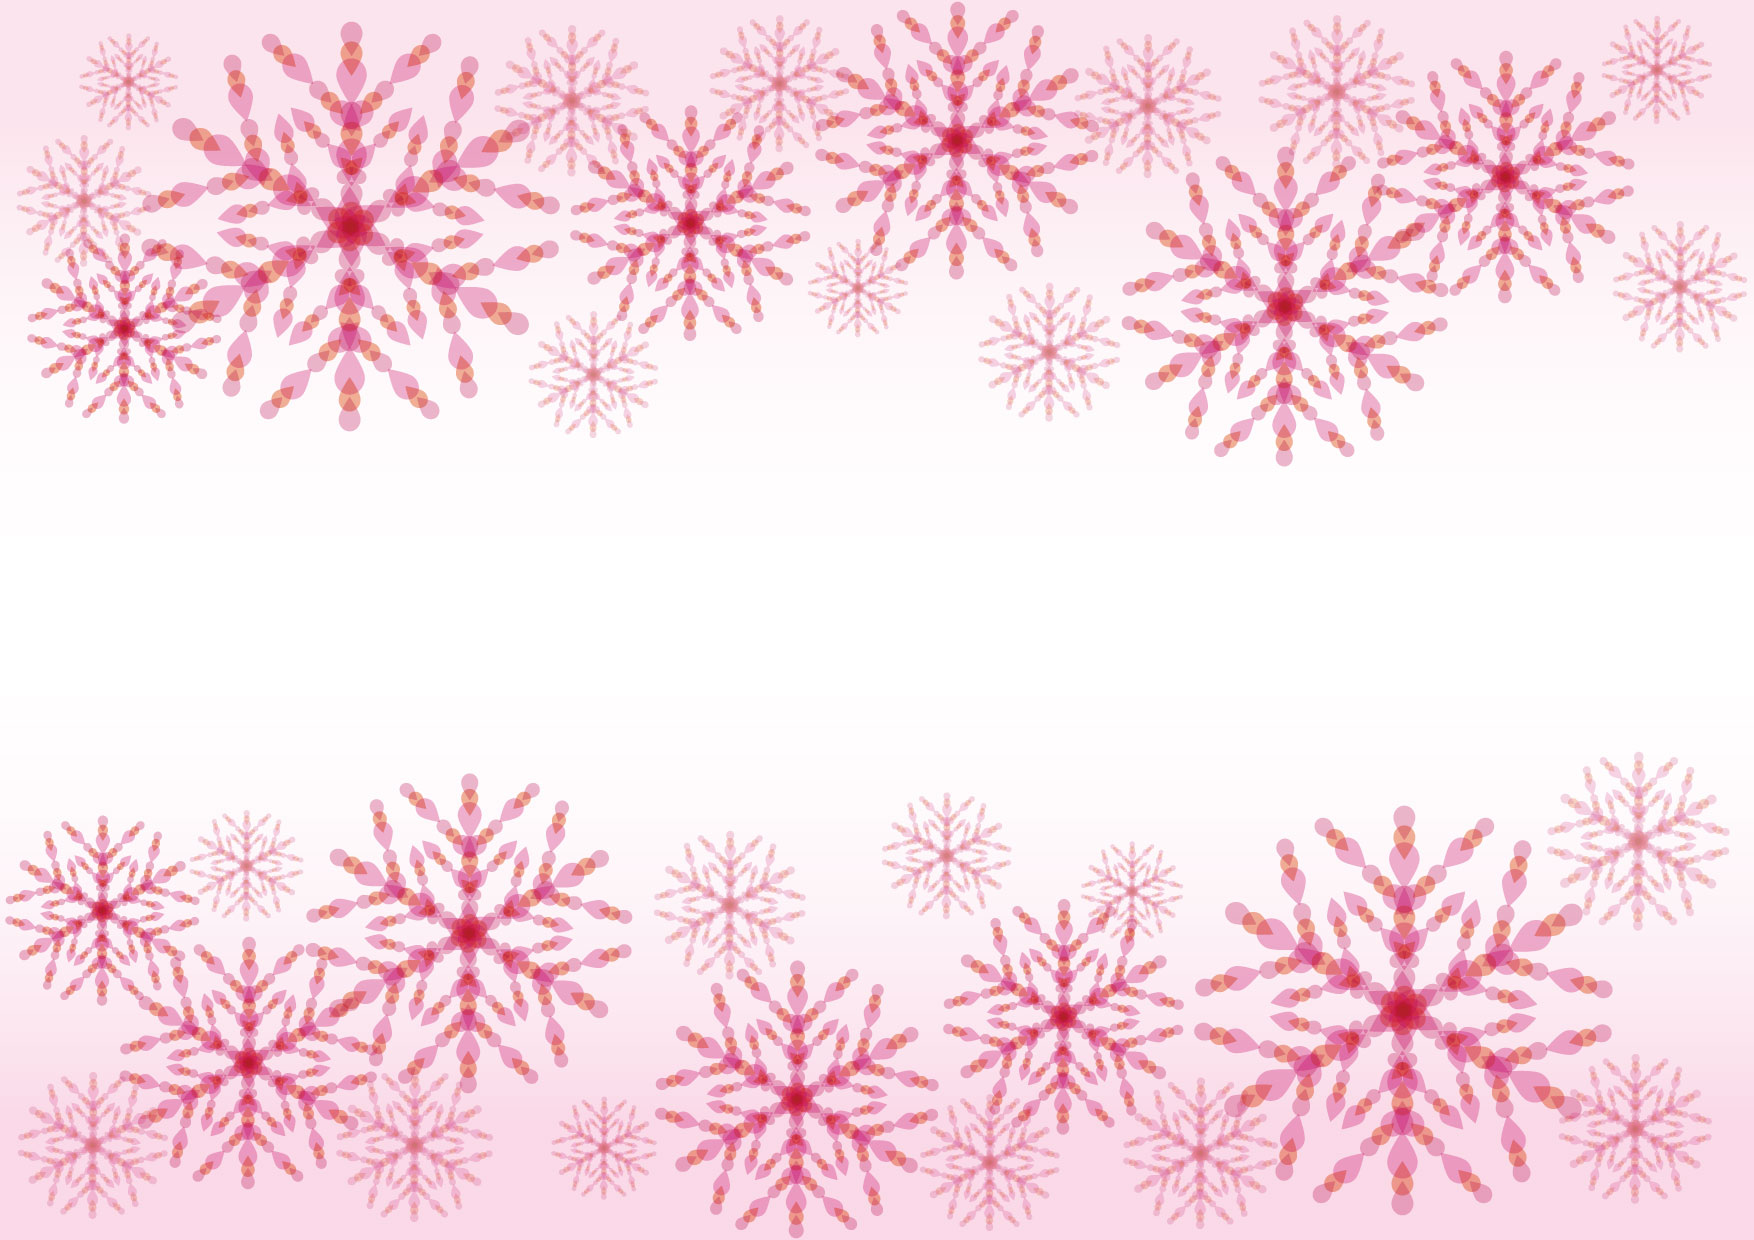 可愛いイラスト無料 雪の結晶 ピンク 背景 Free Illustration Snowflakes Pink Background 公式 イラスト素材サイト イラストダウンロード